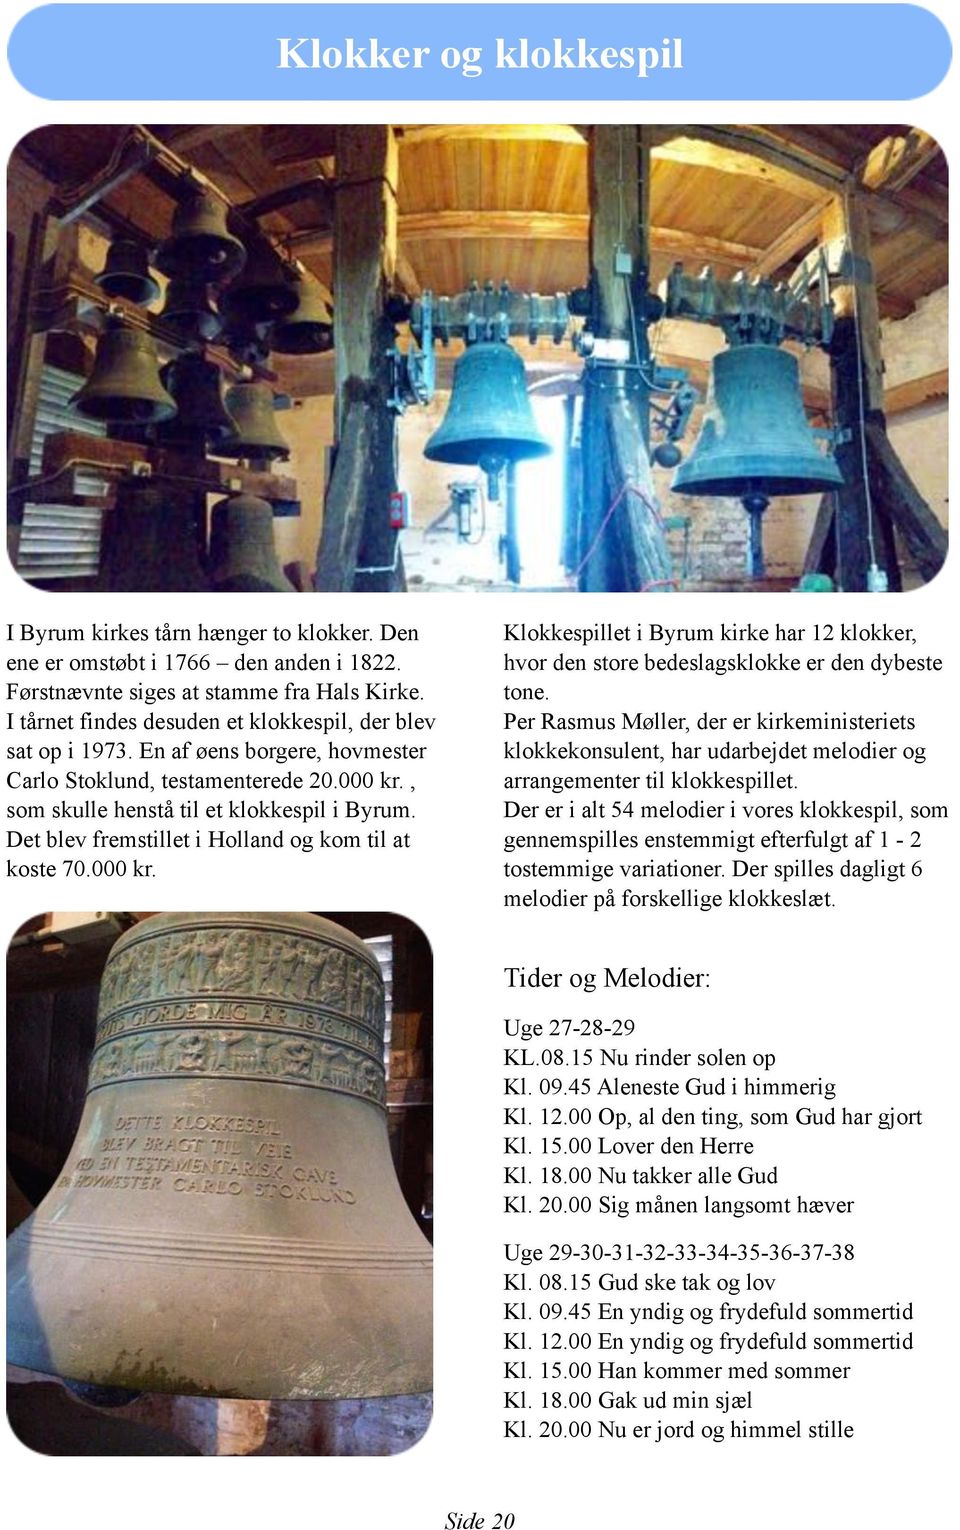 Det blev fremstillet i Holland og kom til at koste 70.000 kr. Klokkespillet i Byrum kirke har 12 klokker, hvor den store bedeslagsklokke er den dybeste tone.